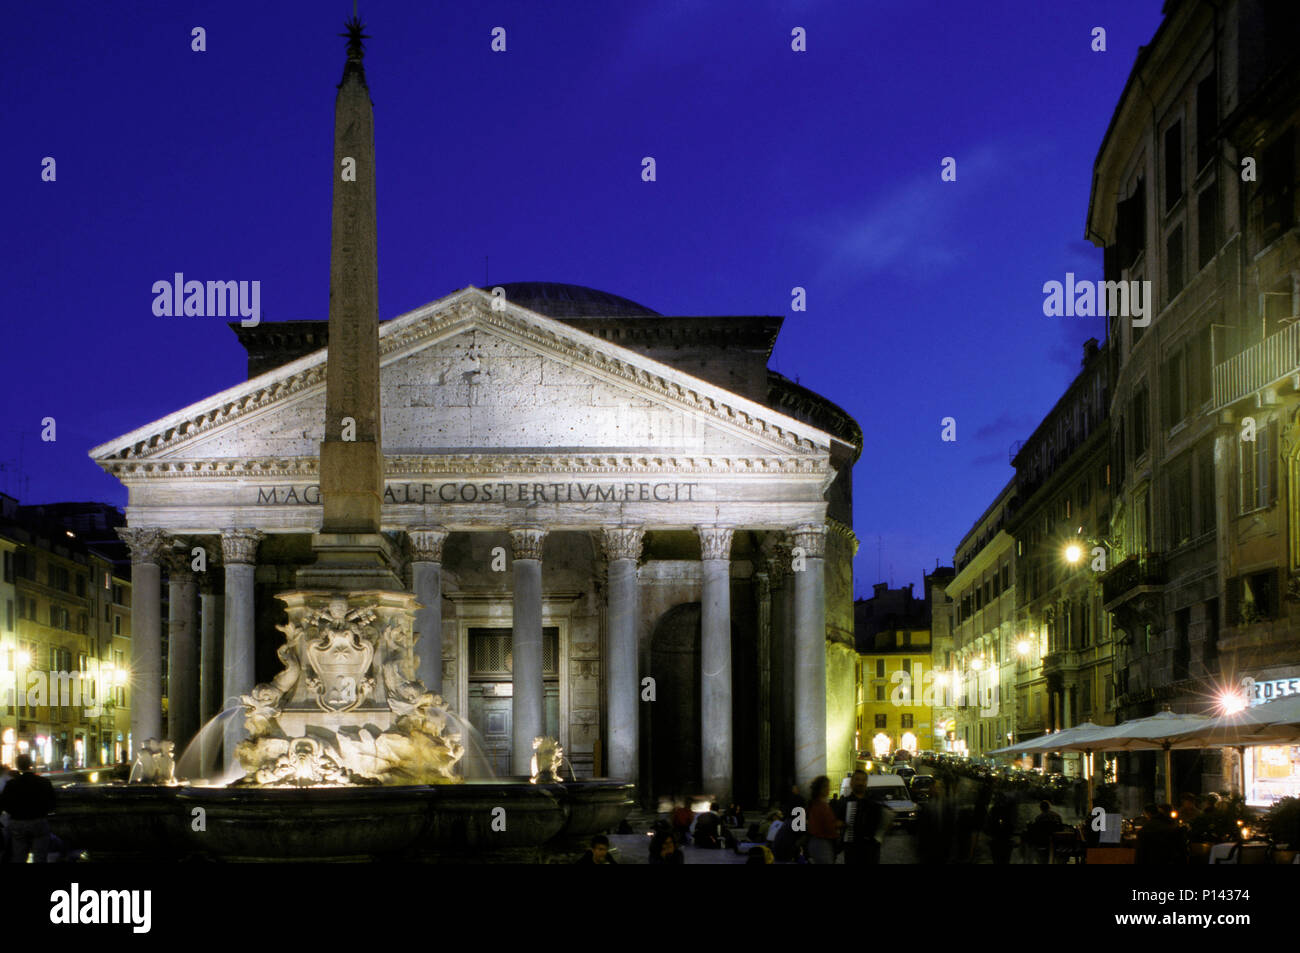 Vue nocturne de la fontaine et la Piazza della Rotonda, avec le panthéon derrière, à la brunante, Rome, Italie Banque D'Images